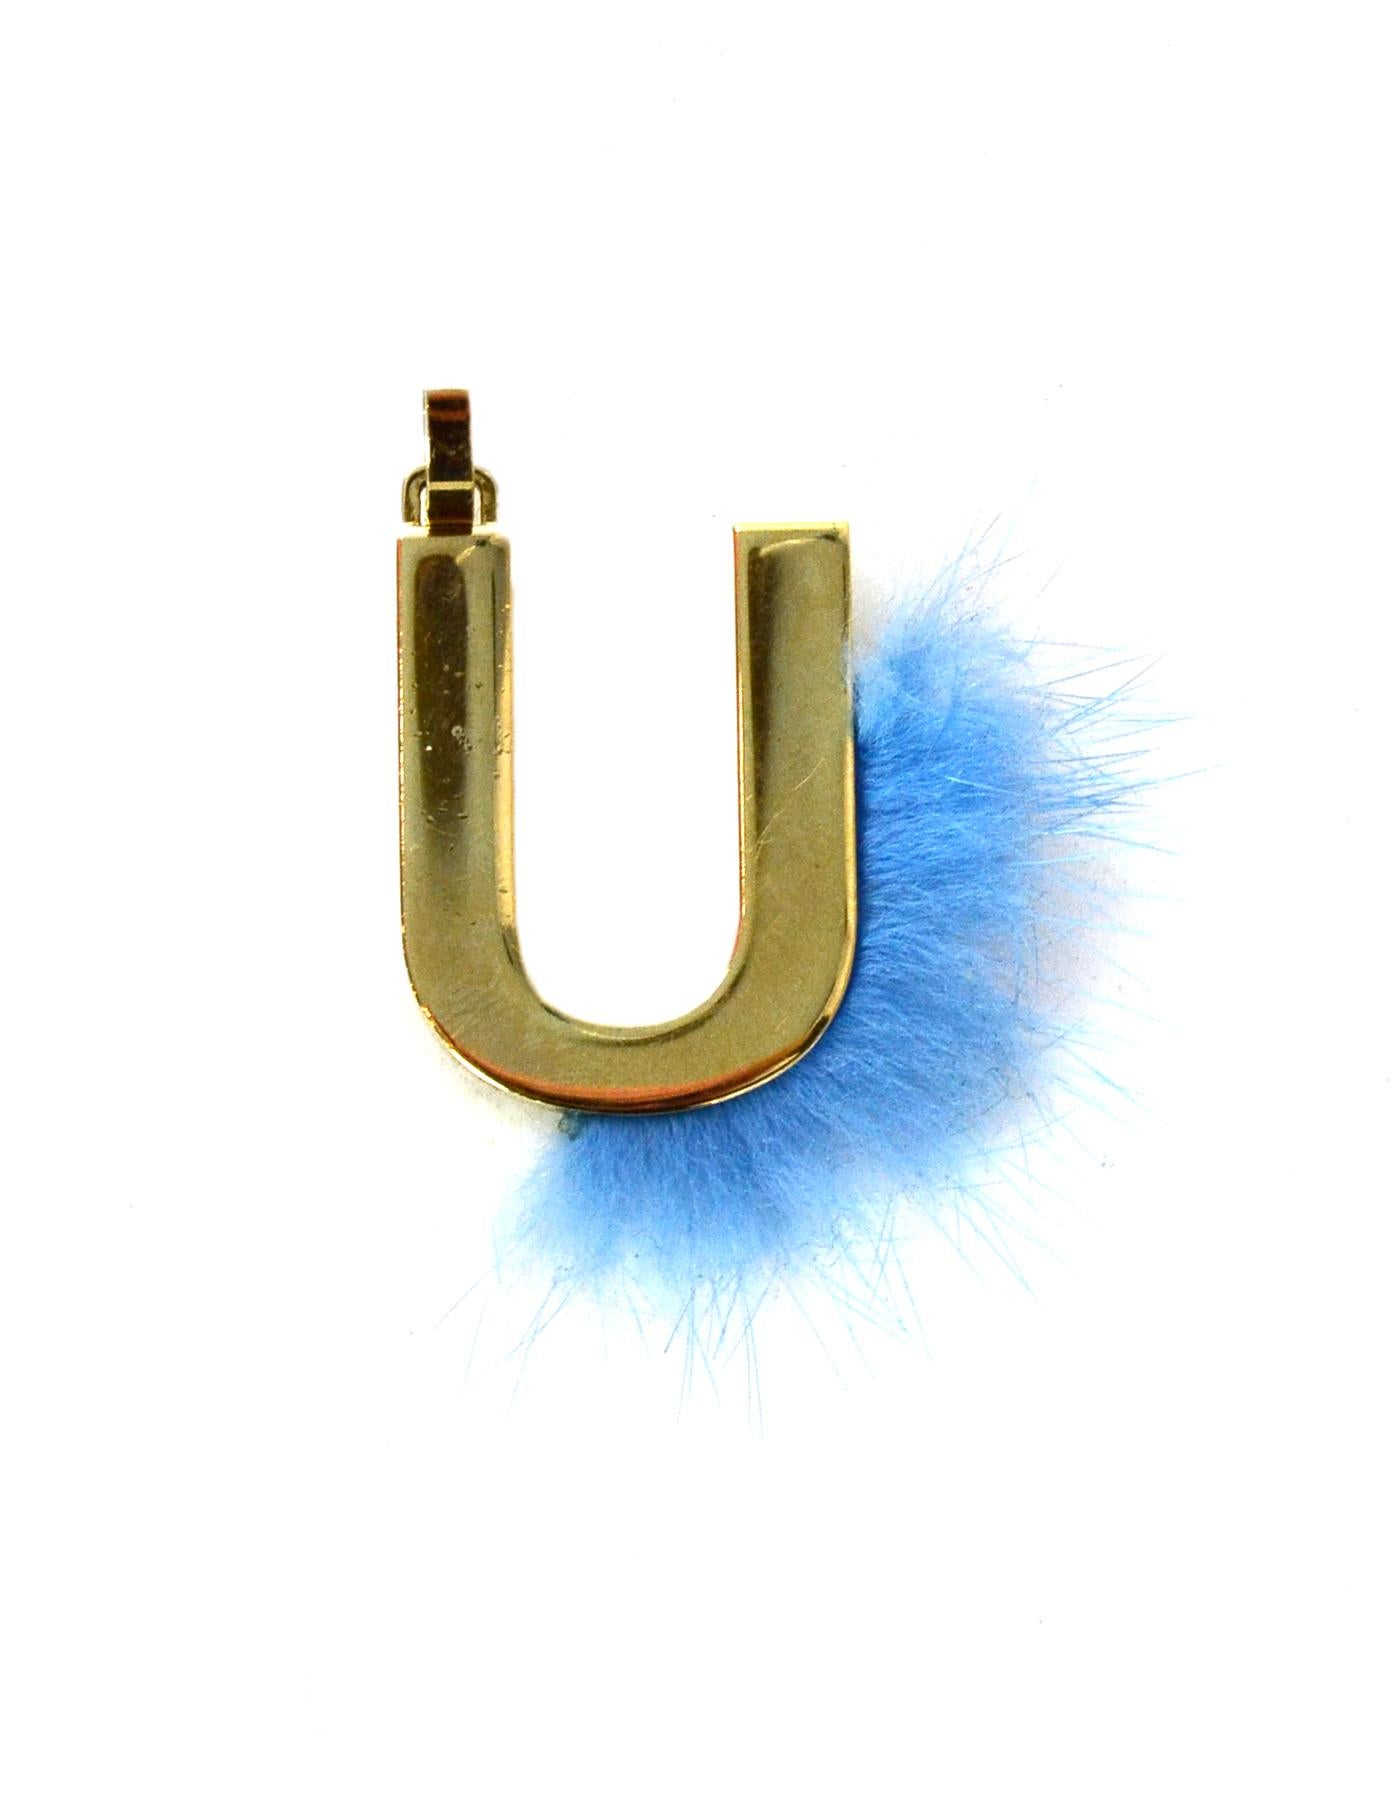 Fendi Gold/blauer Nerzpelz mit der Initiale U Charm

Hergestellt in: Italien
Farbe: Gold/Blau
Materialien: Metall und Nerzfell
Markenzeichen:  